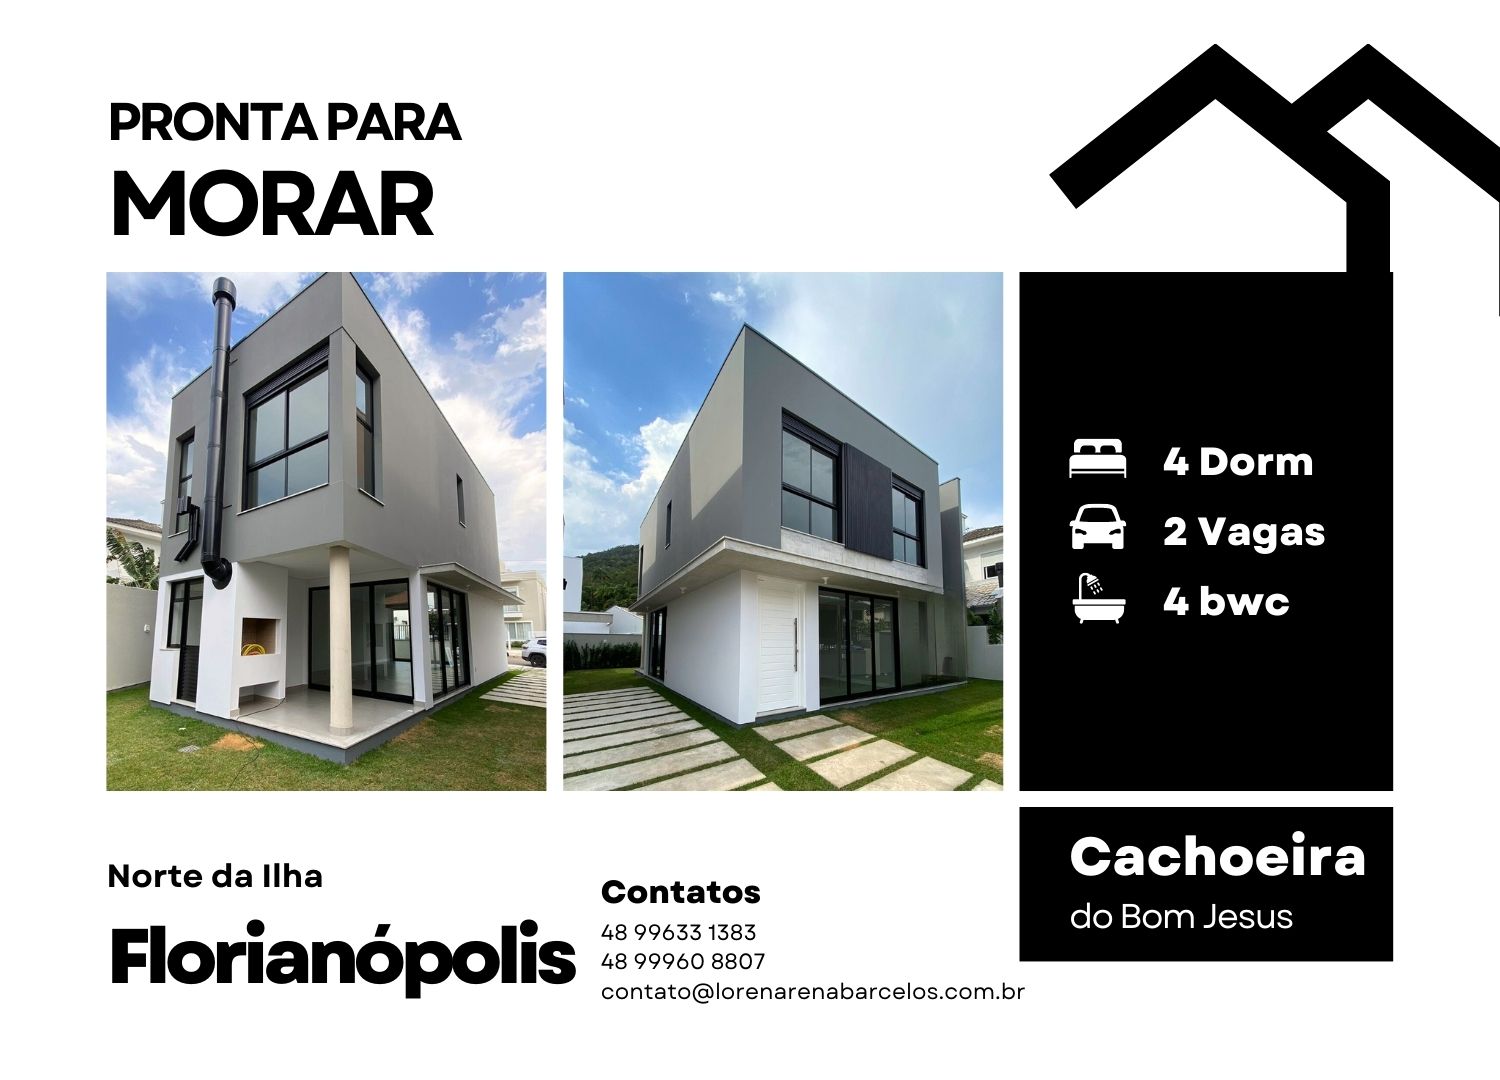 PRONTA PARA

 

Cachoeira
Norte da llha Contatos
® ” ® 48996331383 do Bom Jesus
Florianopolis : x

contato@lorenarenabarcelos.com.br